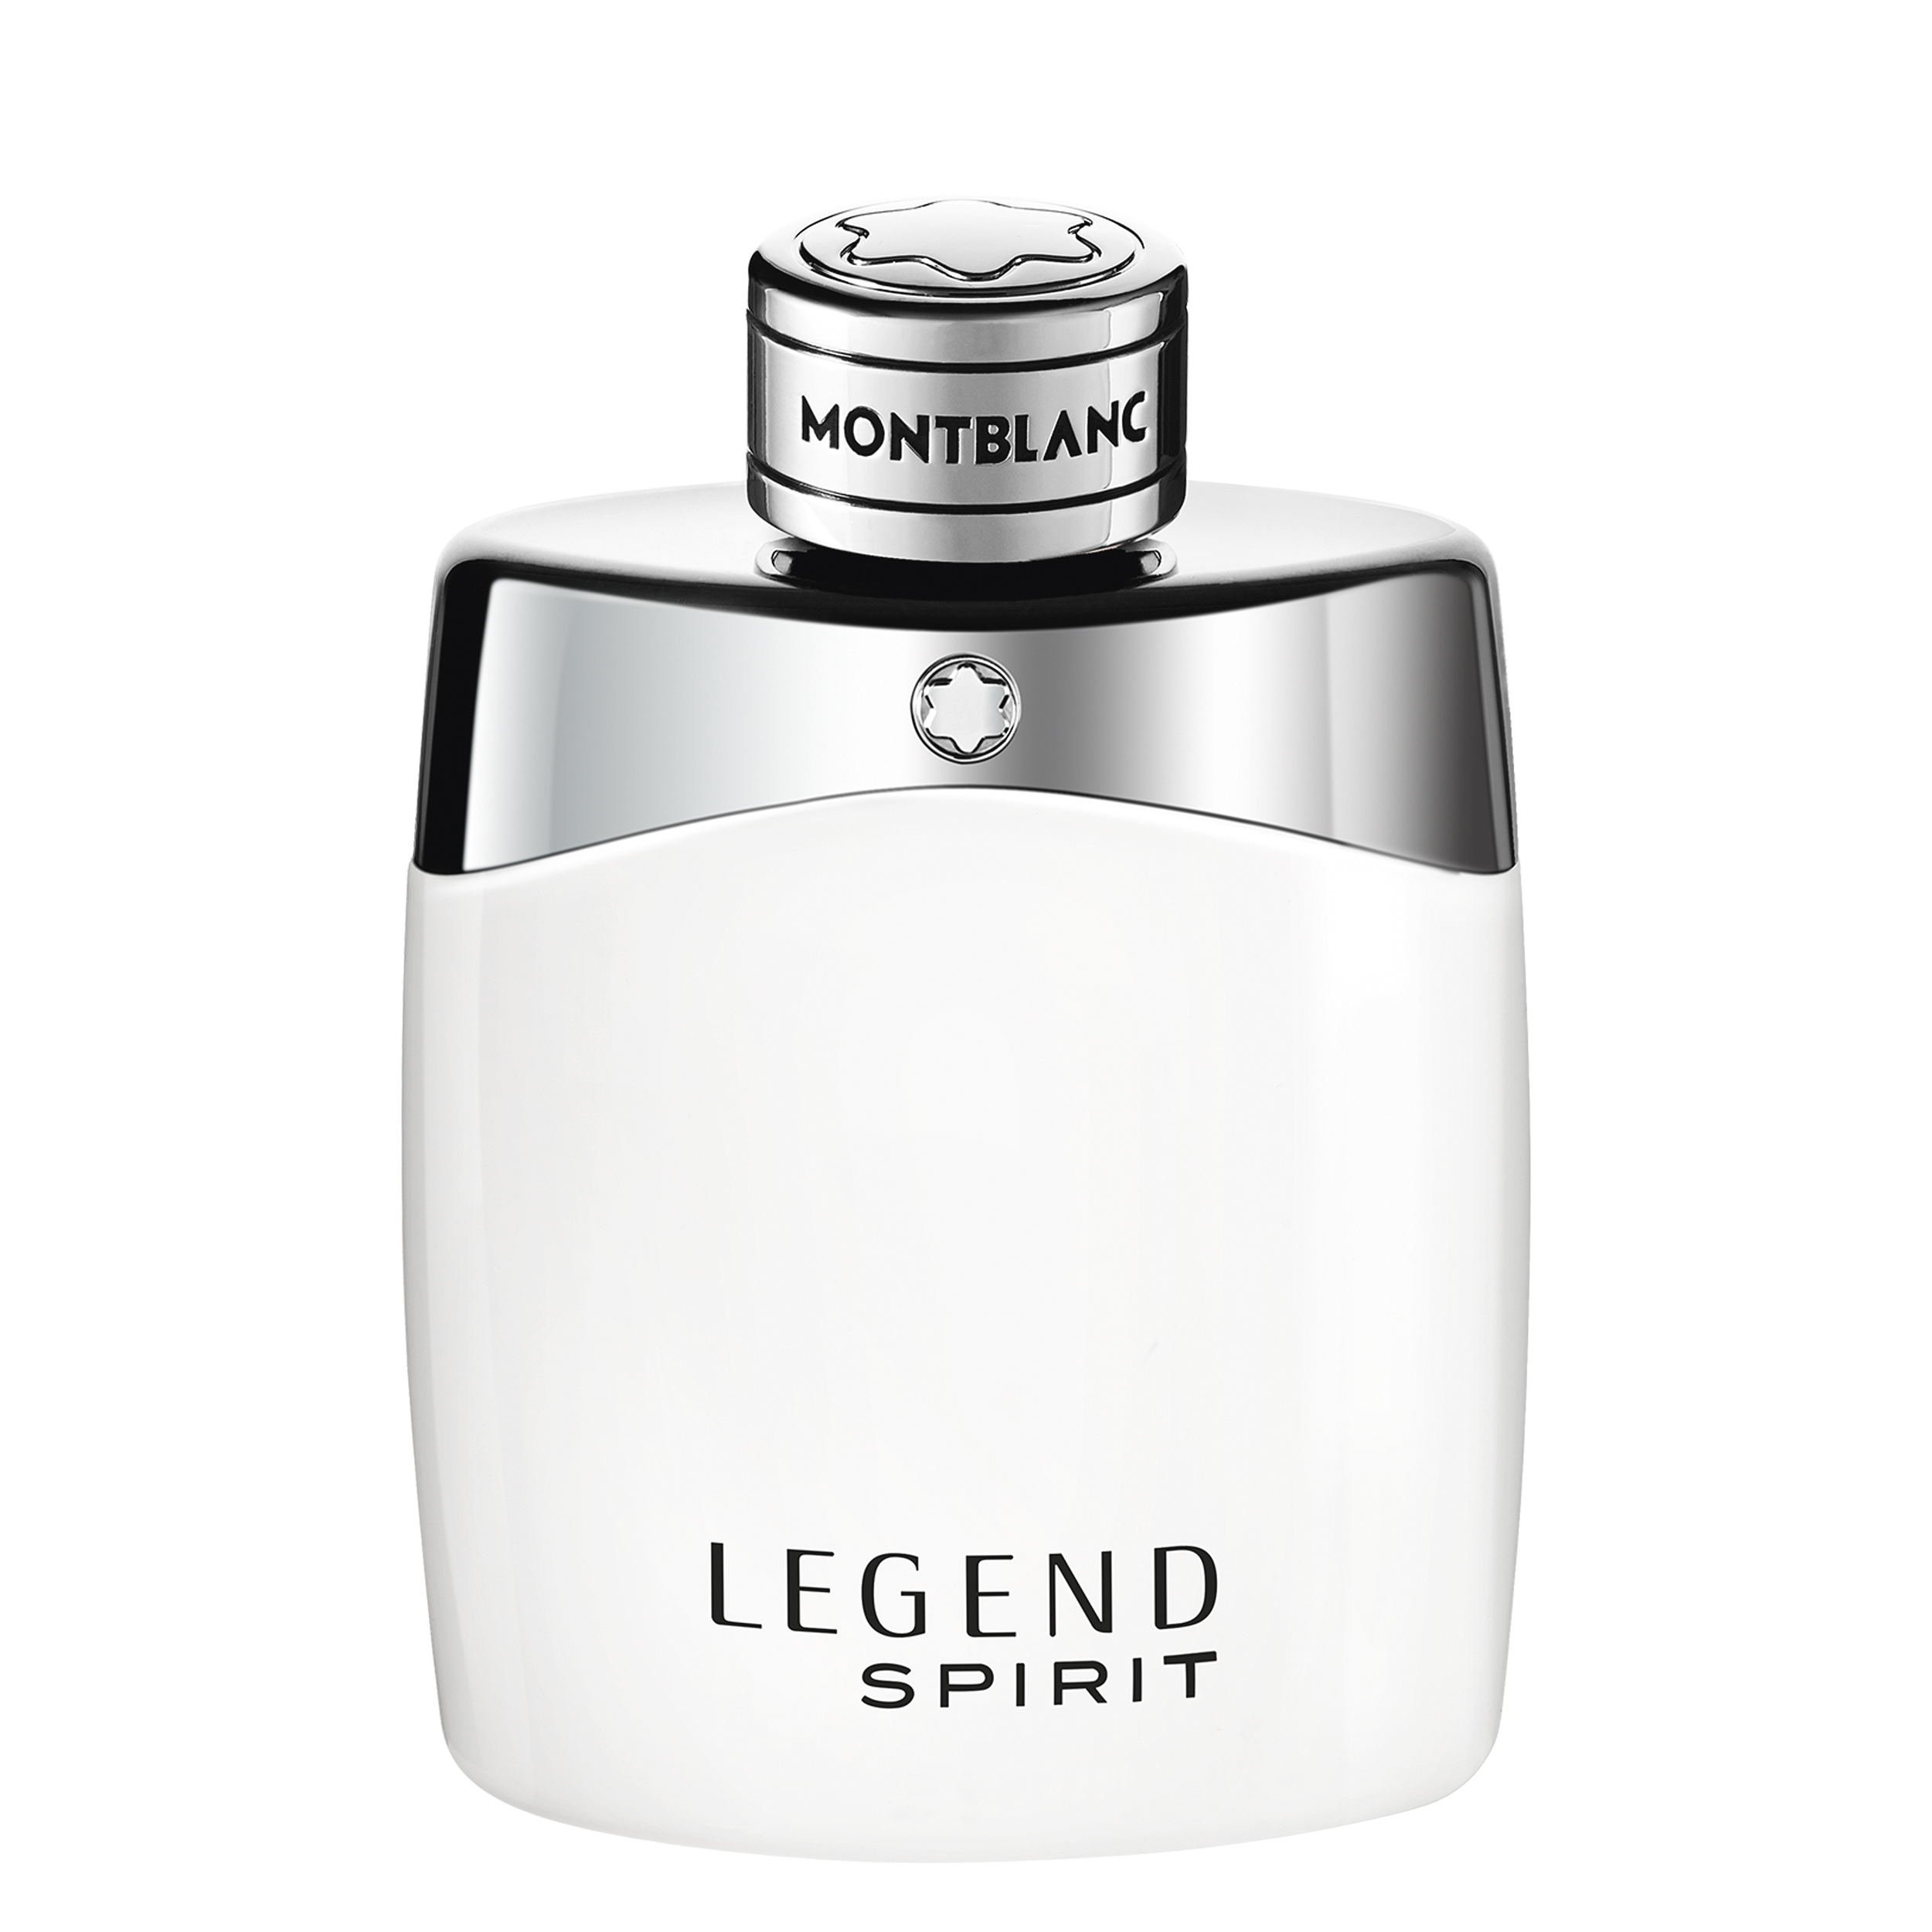 Legend Spirit Eau de Toilette 100 ml, image 1